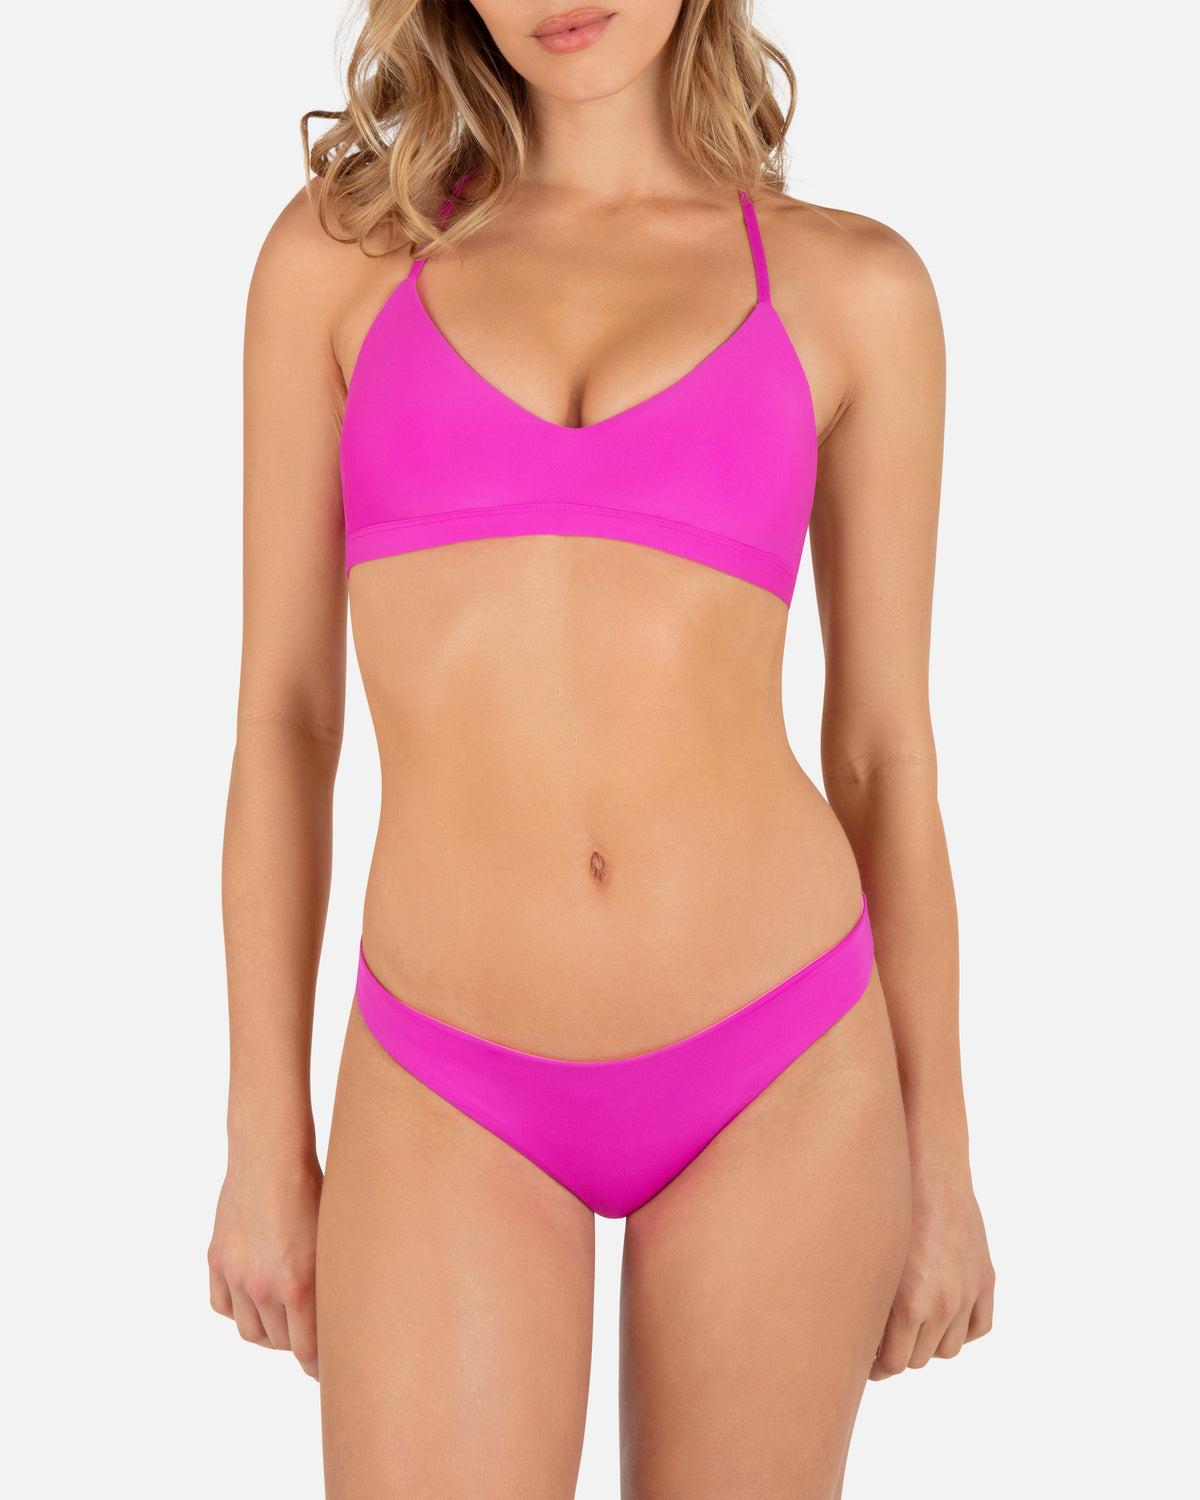 Hurley Women's Bikini Underwear (5-Pack), Blue/Pink/Tie Dye, 4